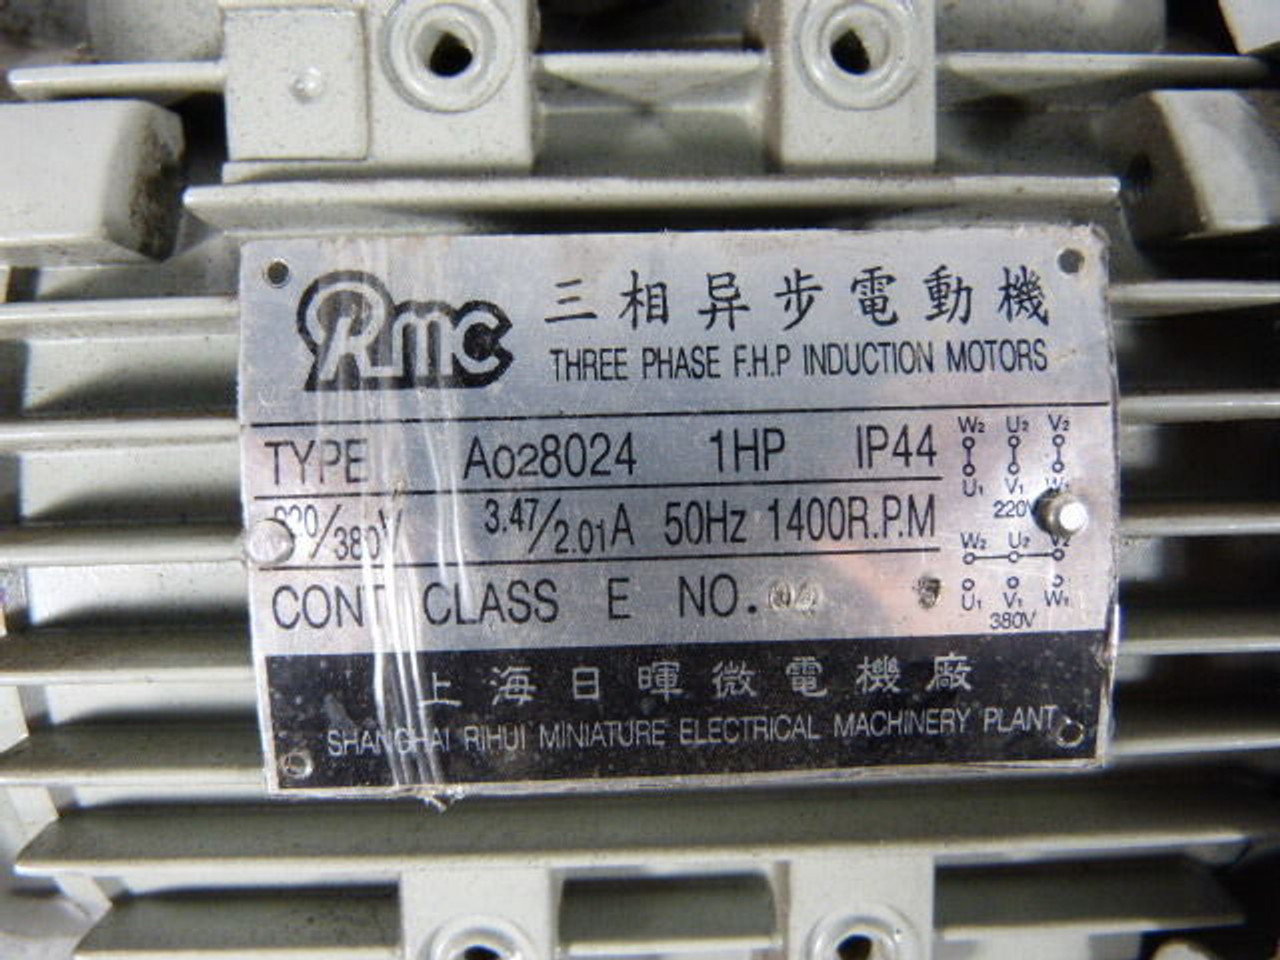 Shanghai Rihui 1HP 1400RPM 220/380V TEFC 3Ph 3.47/2.01A 50Hz USED